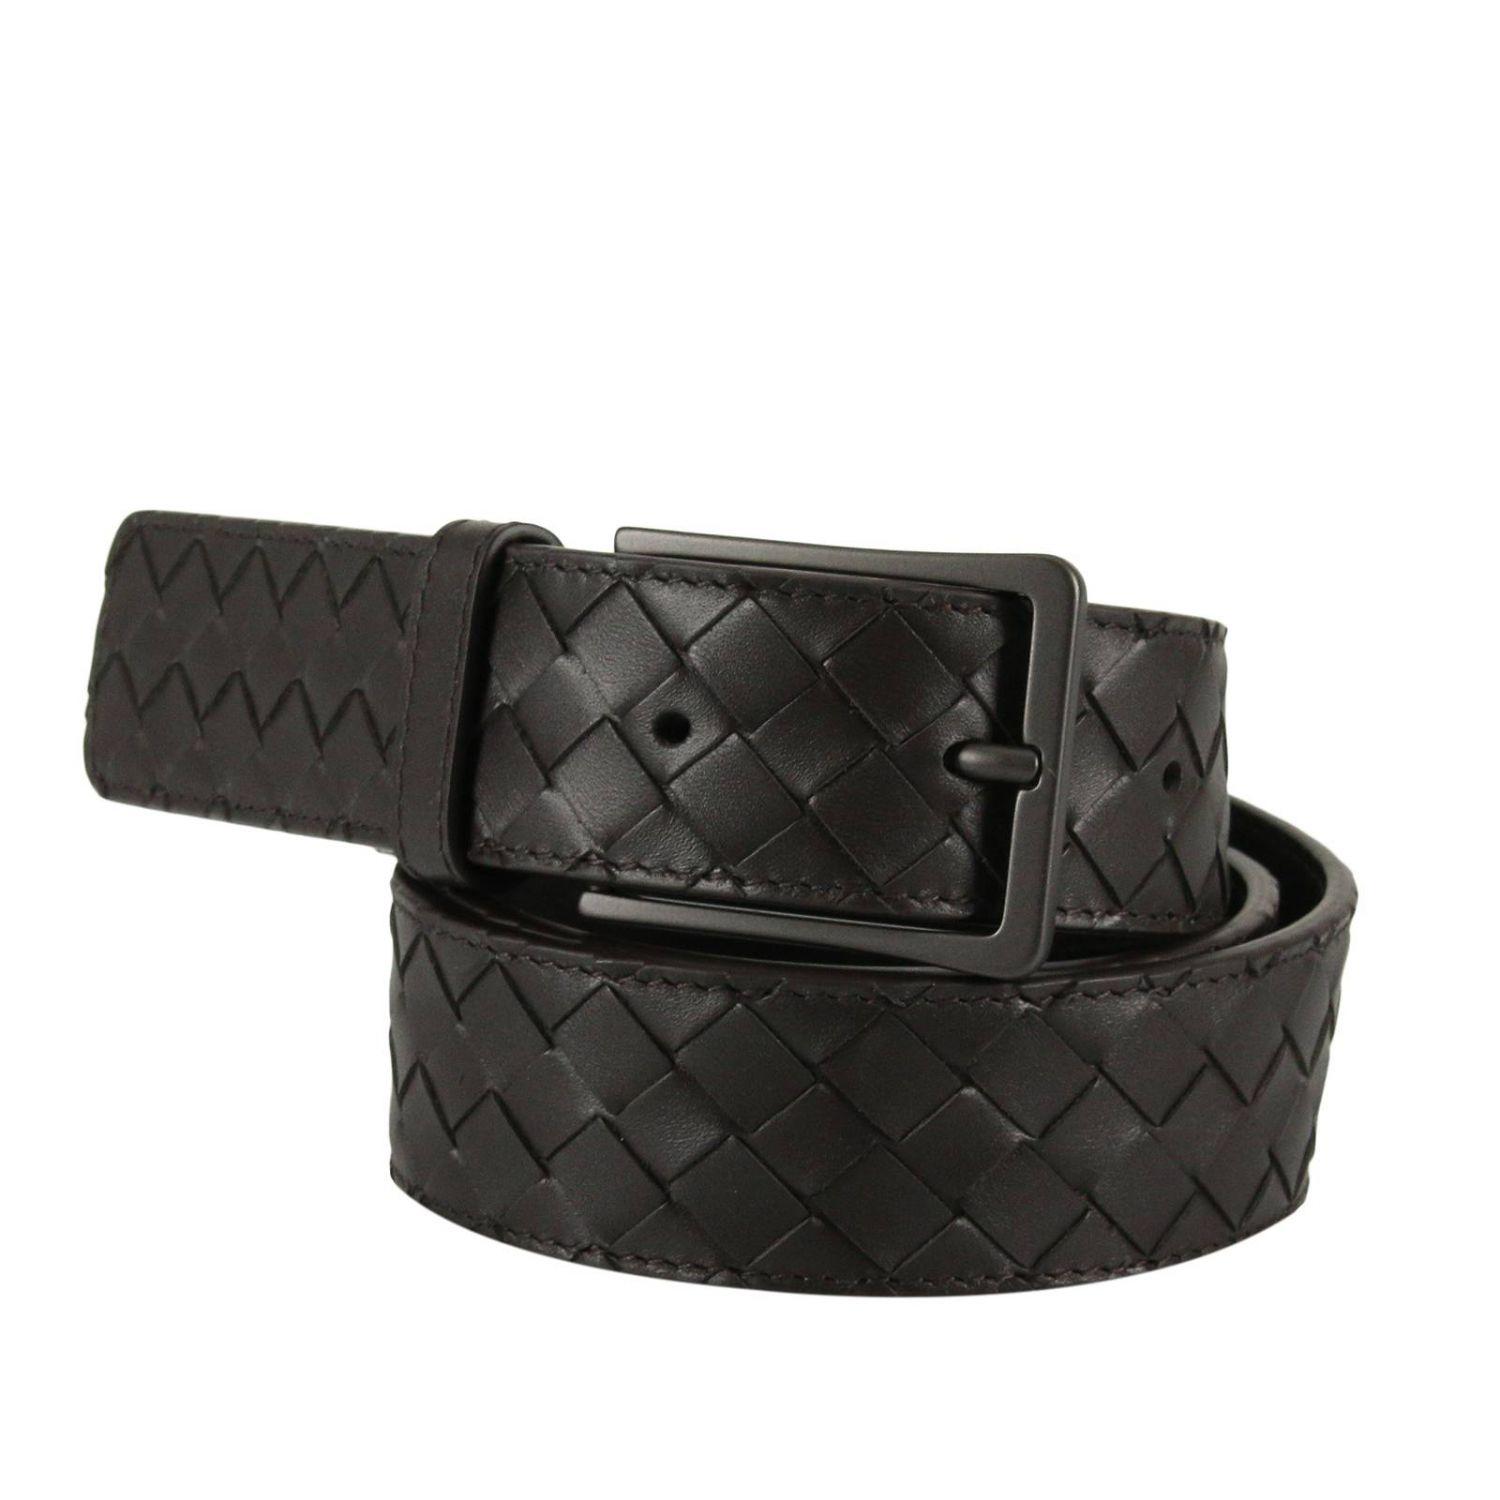 Bottega Veneta Leather Men's Belt in Black for Men - Lyst